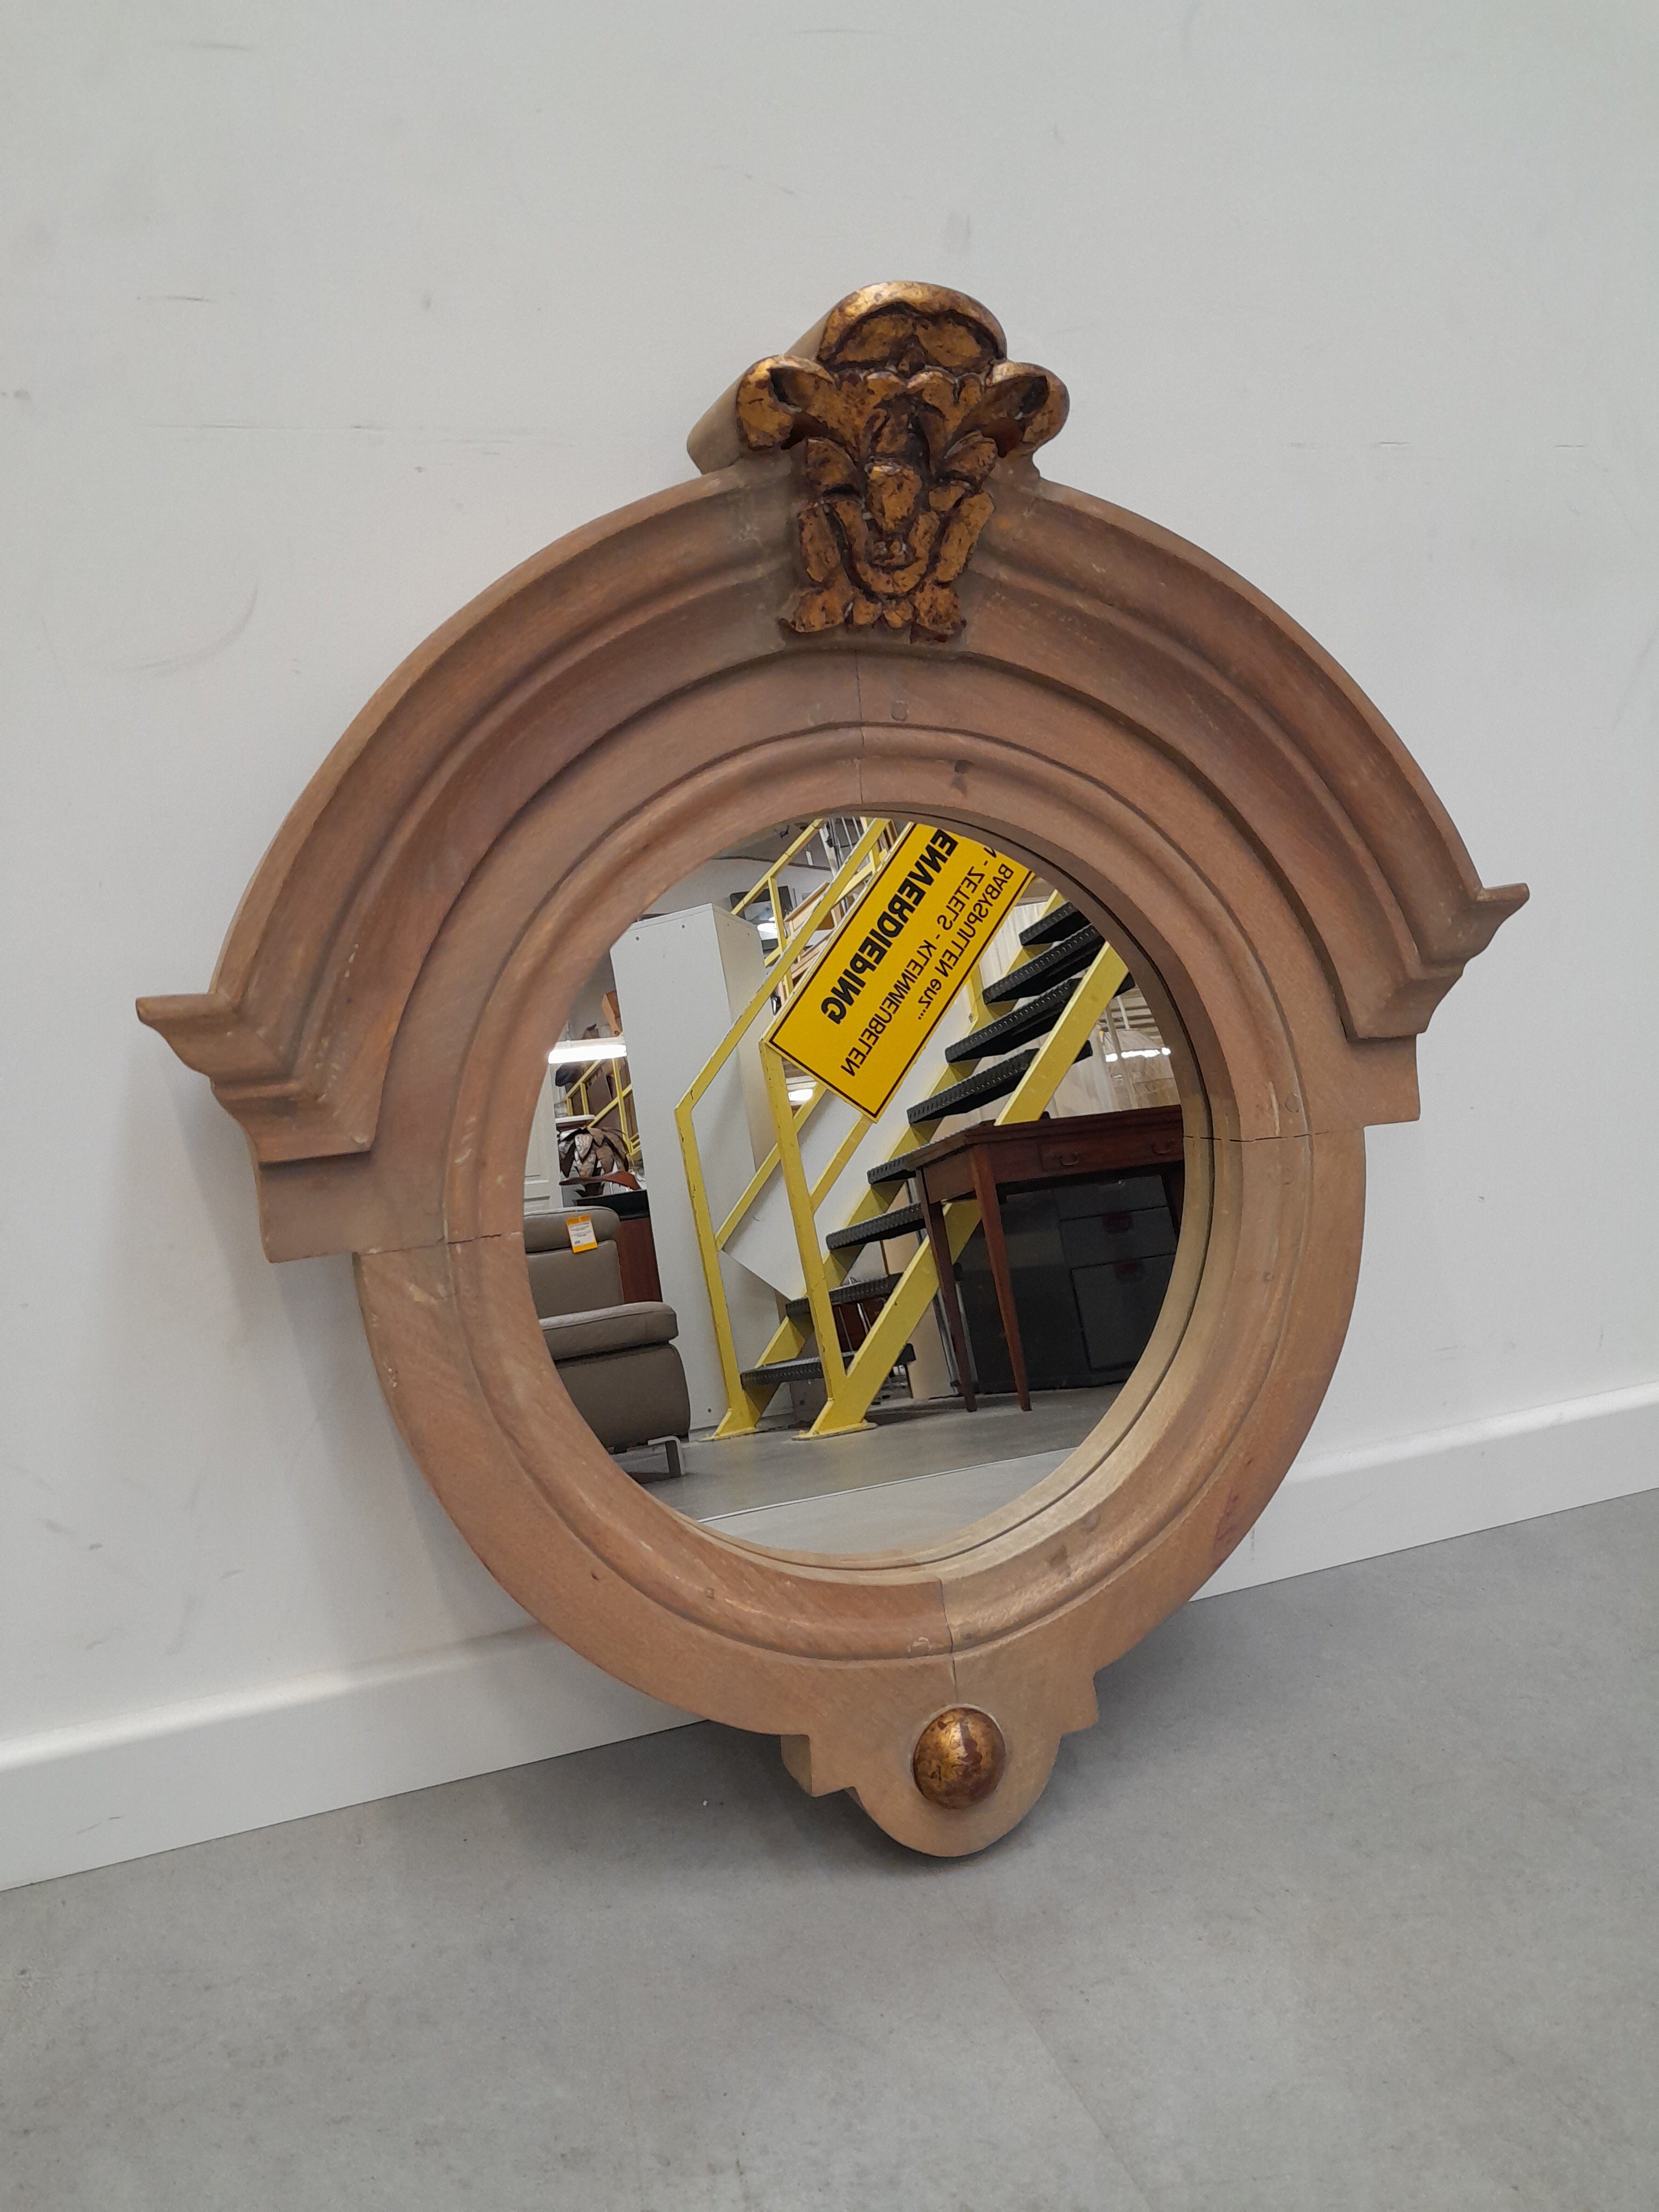 Round mirror in wooden frame